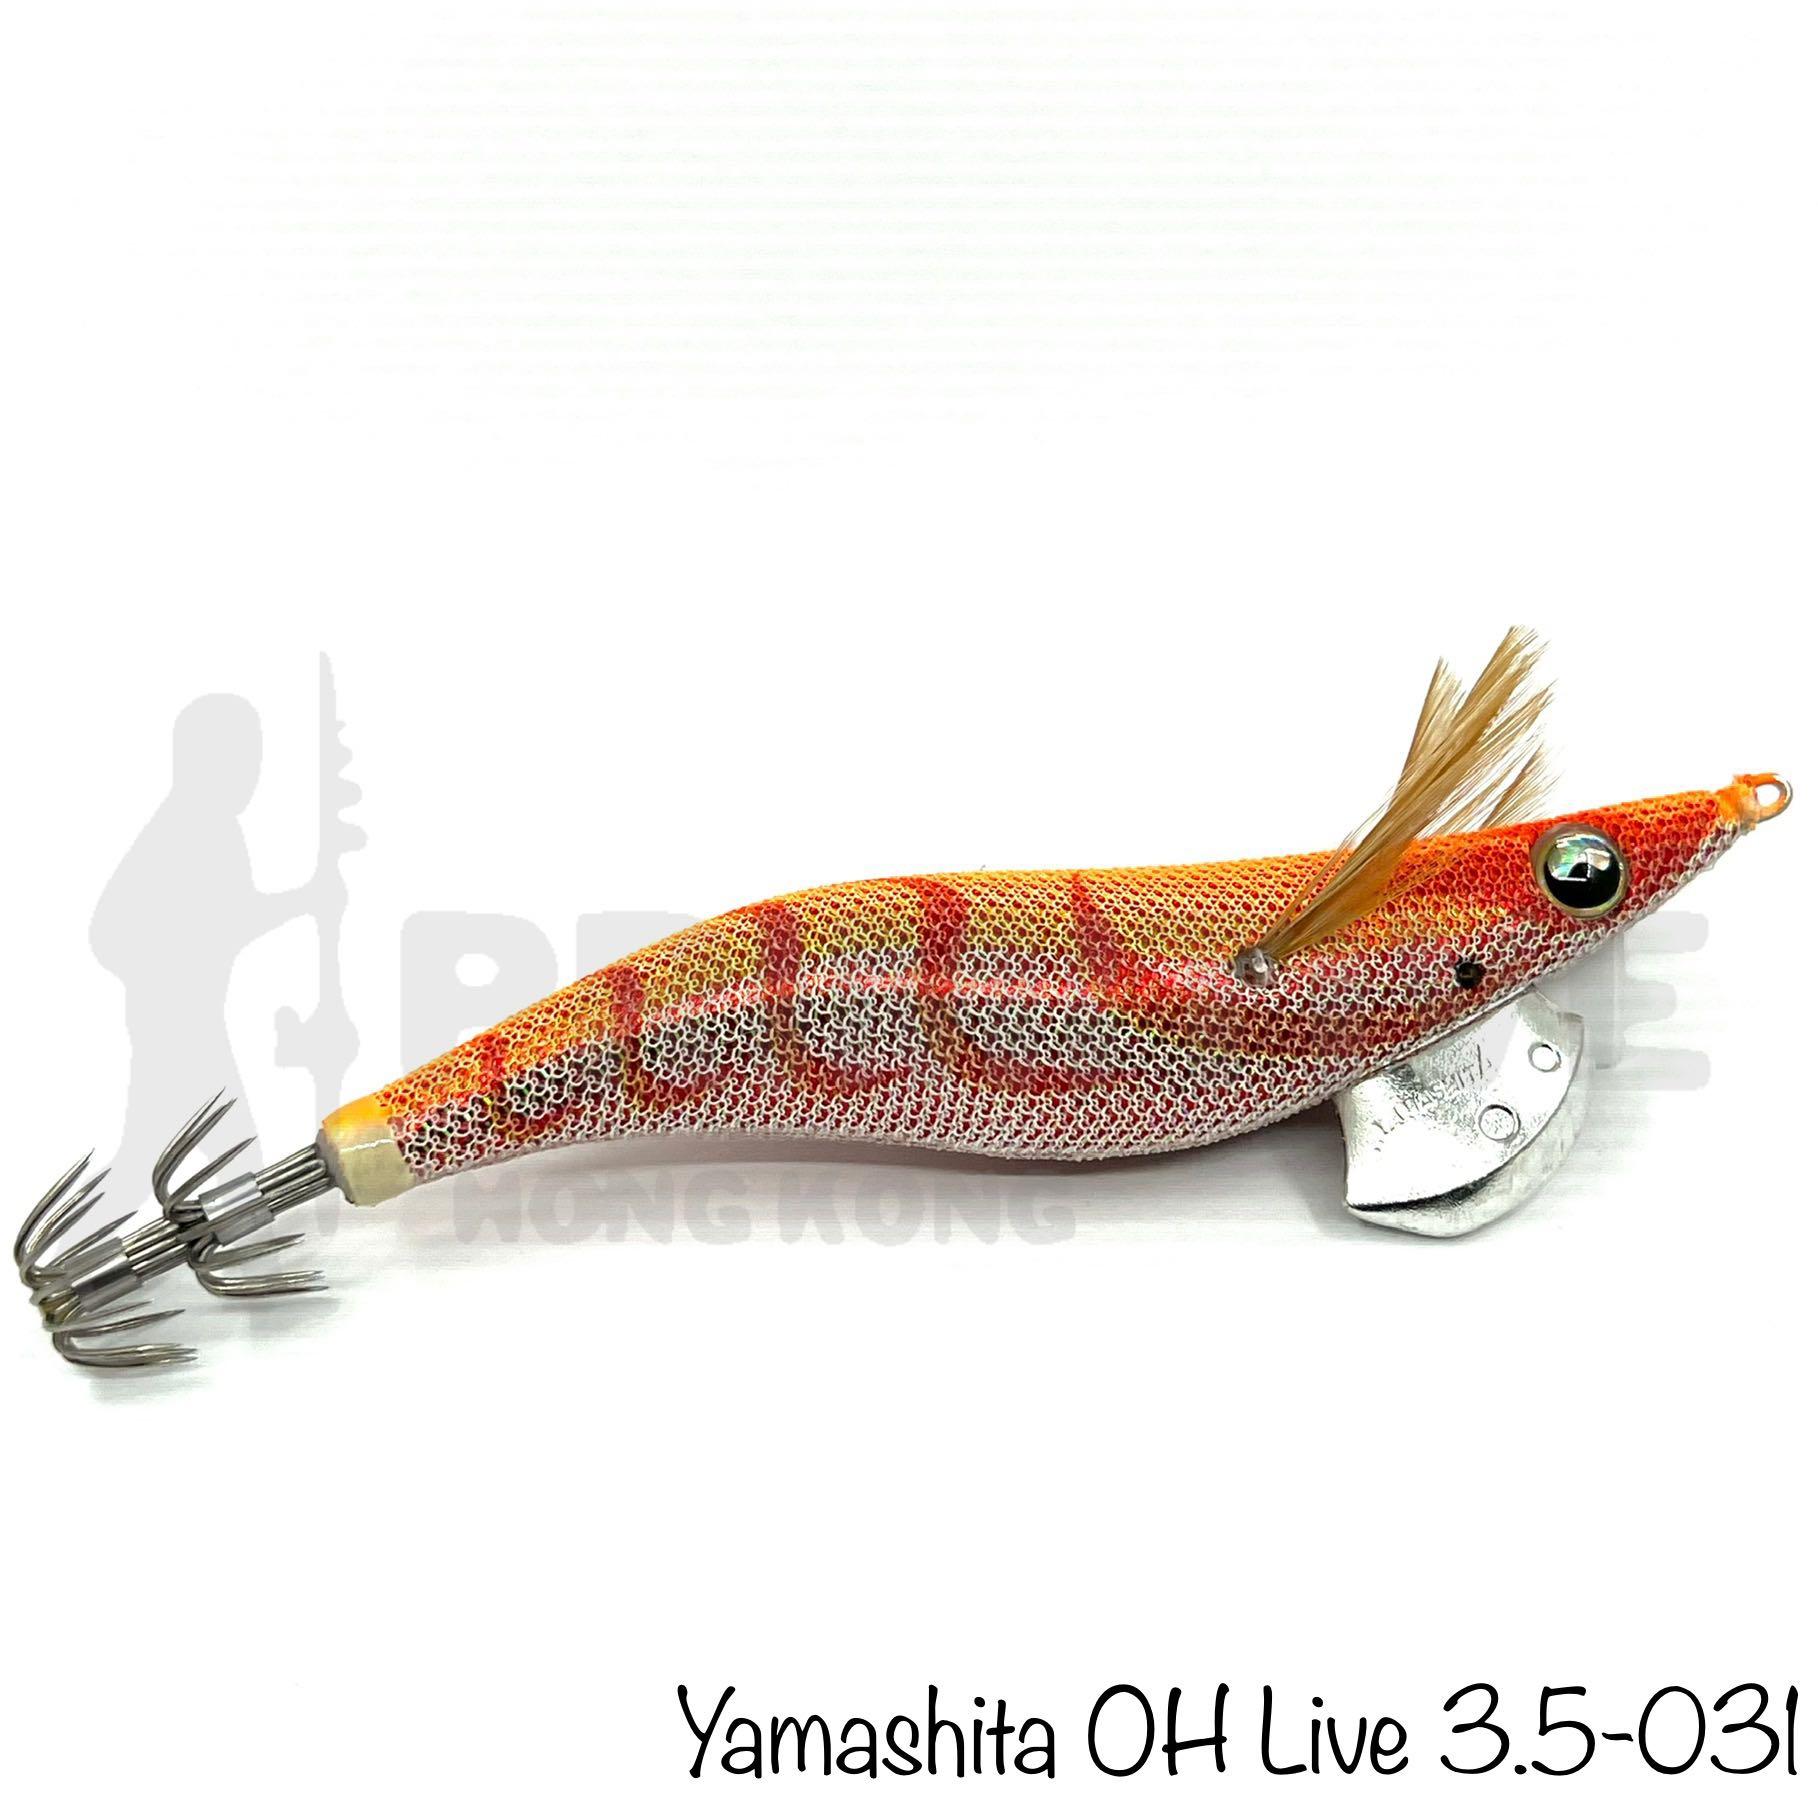 日本假餌Yamashita Egi OH Live 3.5 餌木釣魚•釣魚用品•Yamashita •490